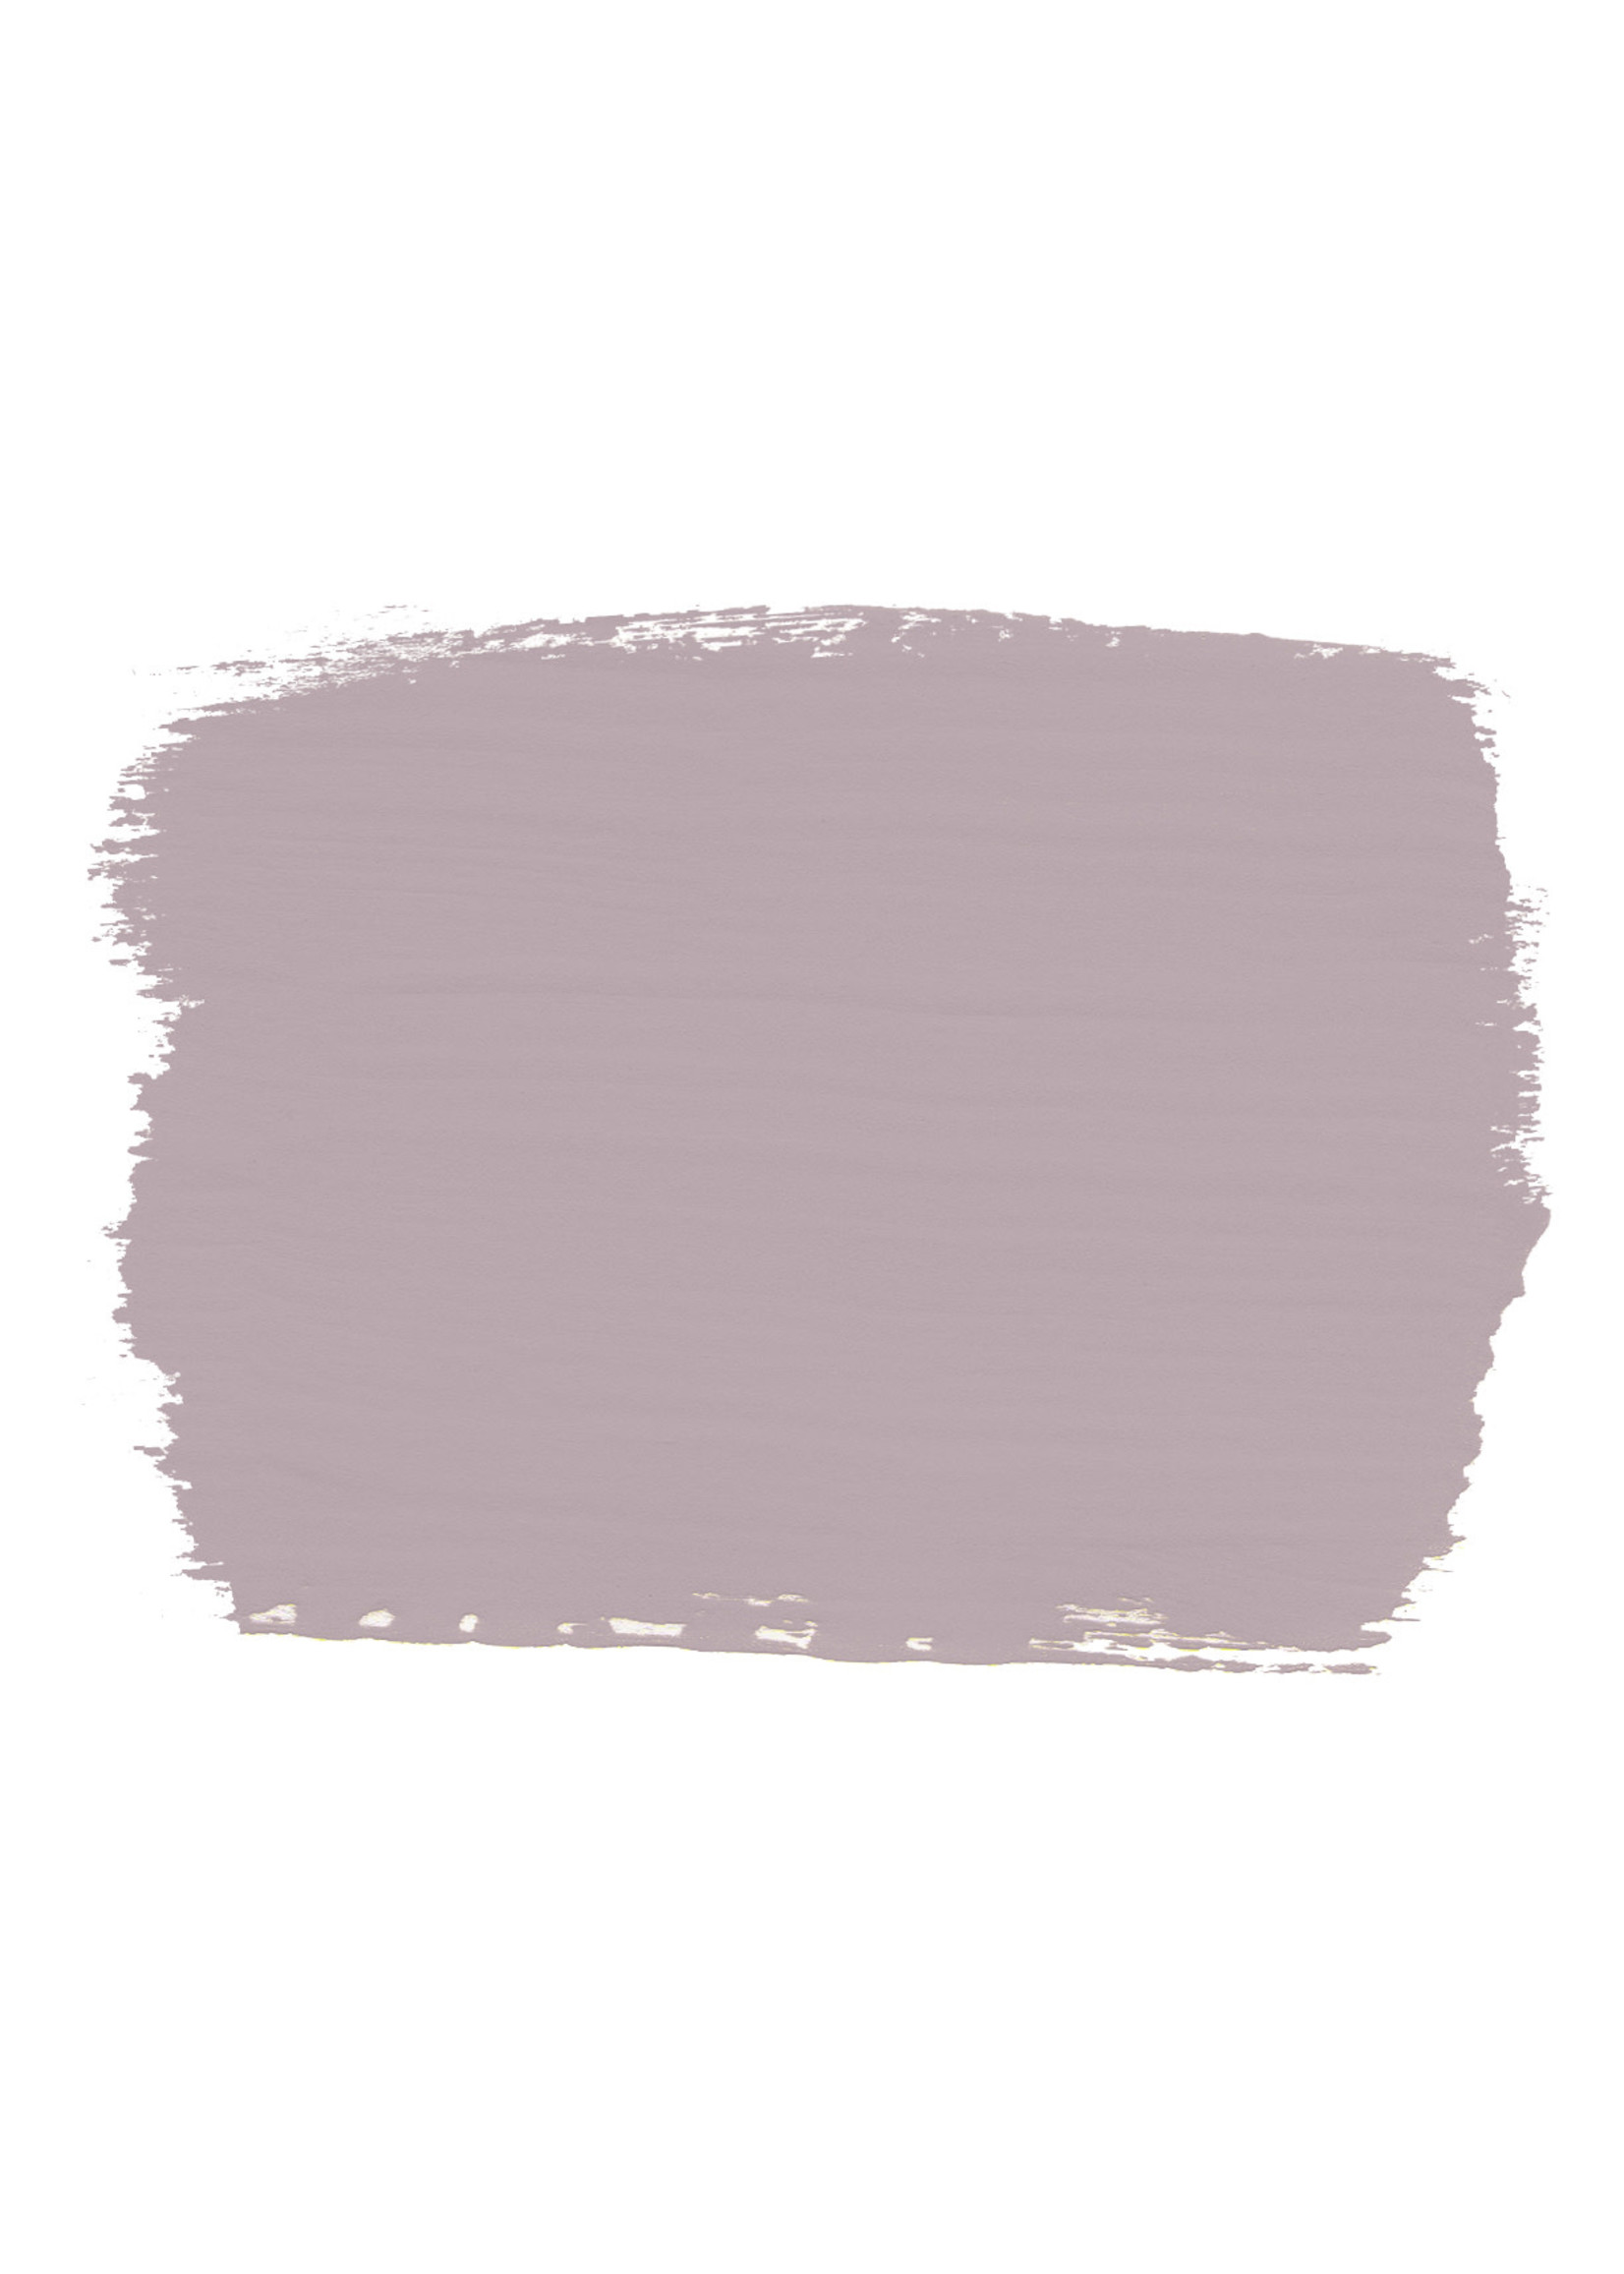 Annie Sloan Chalk Paint® Paloma Chalk Paint ®